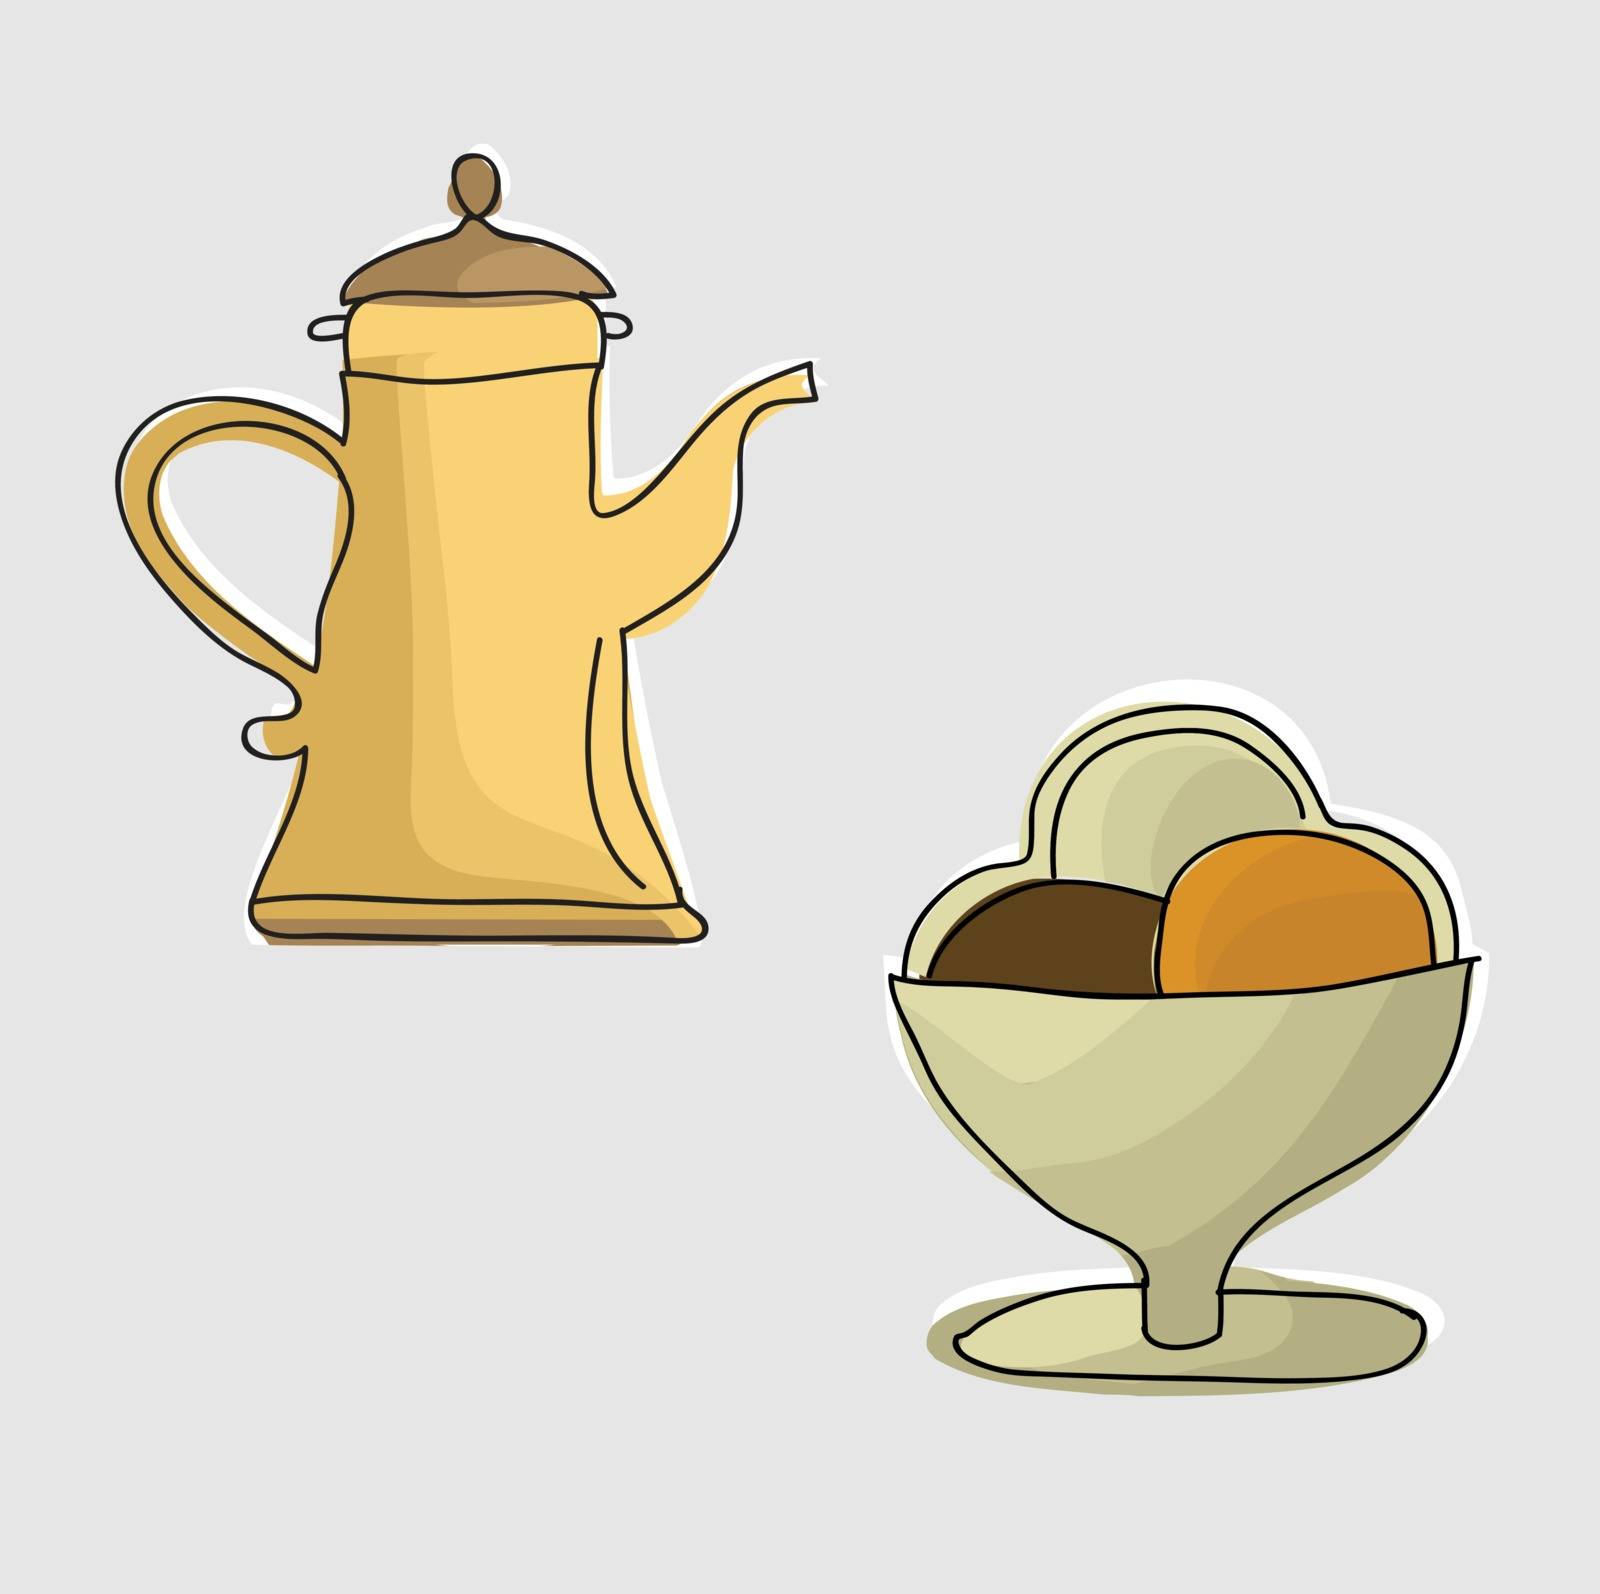 Coffee pot with coffee by Alexzel